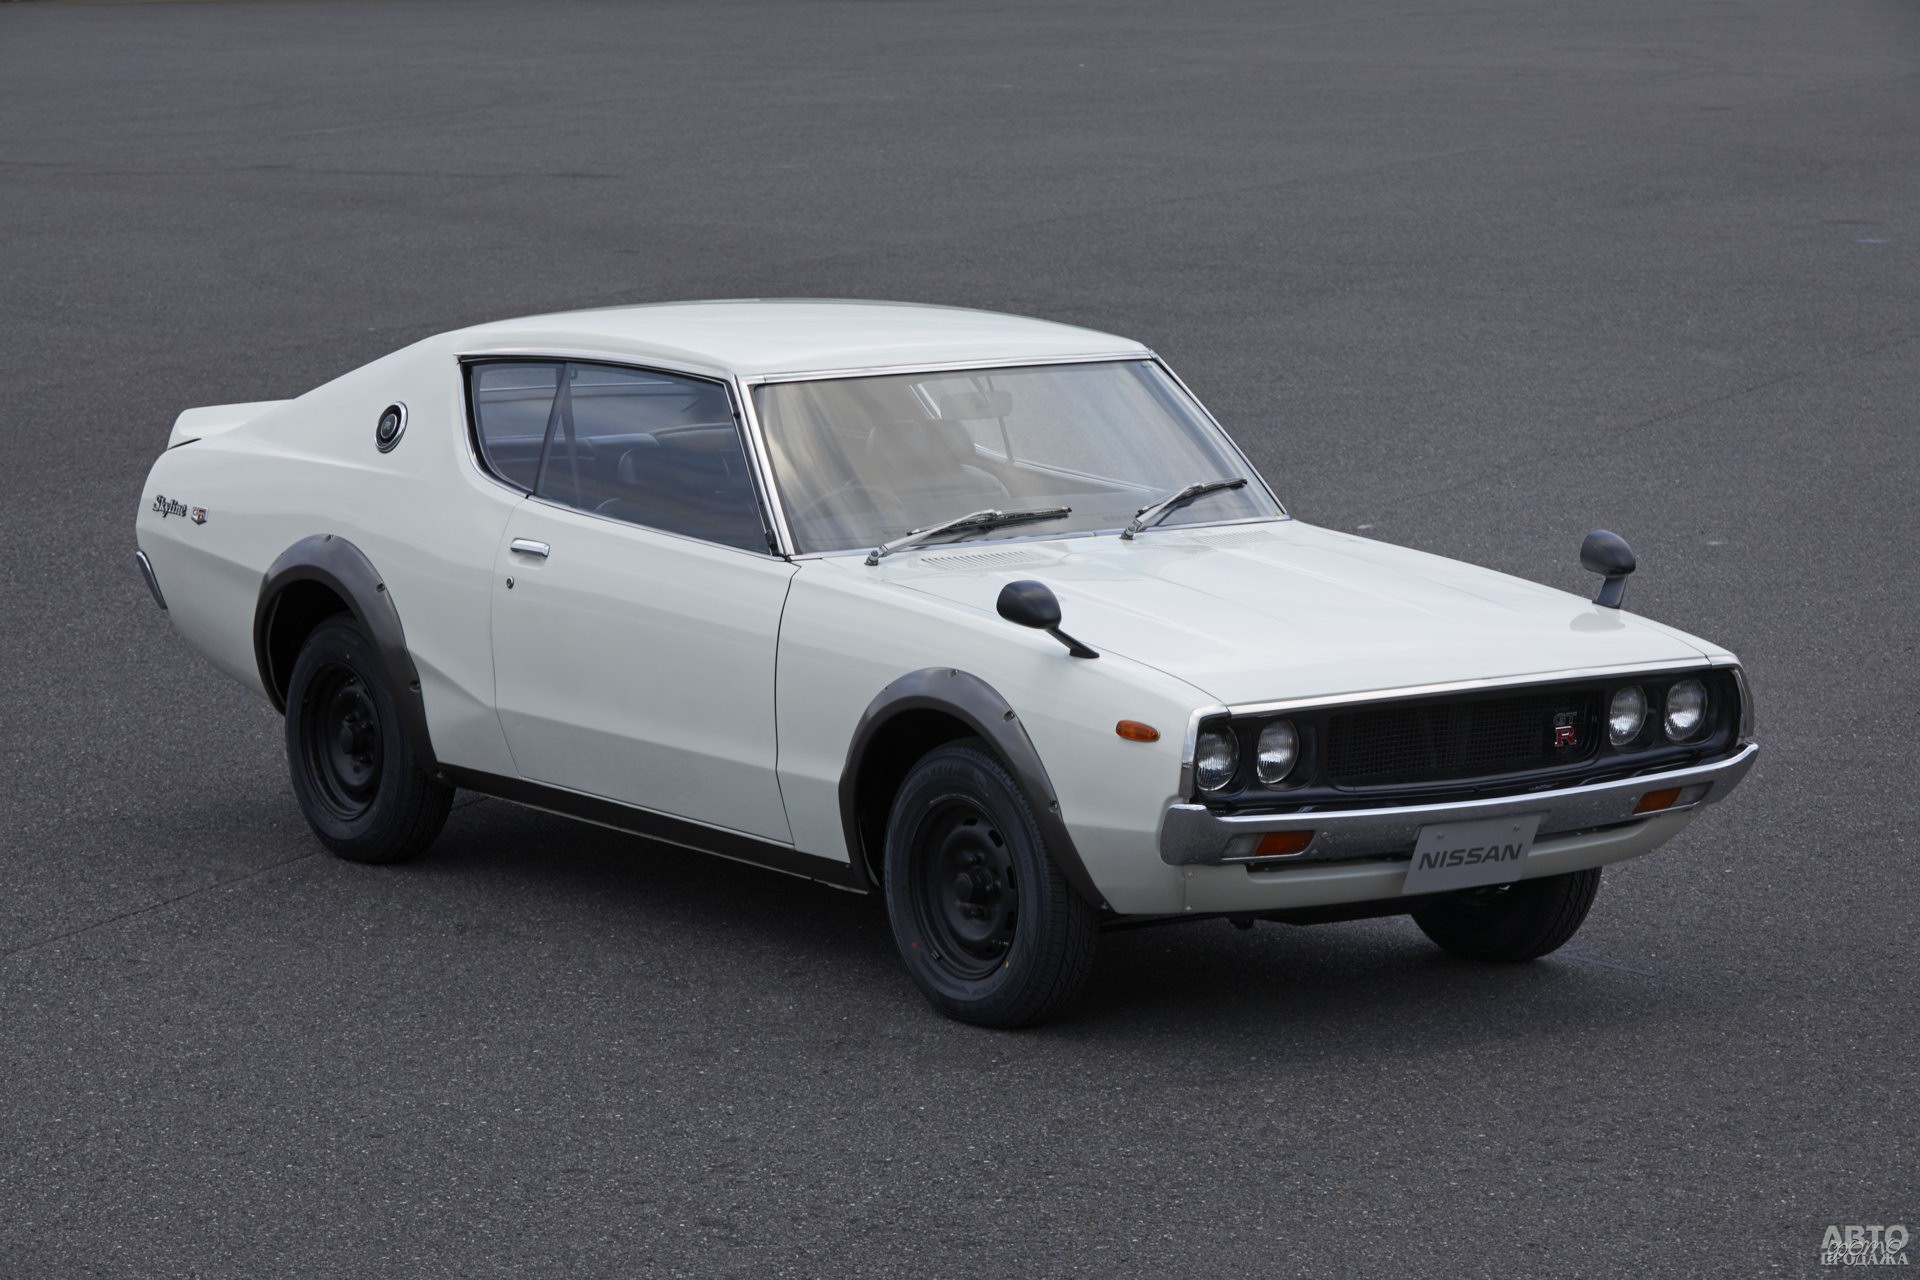 Nissan Skyline 2000 GT-R 1973 года выпустили в количестве 195 единиц